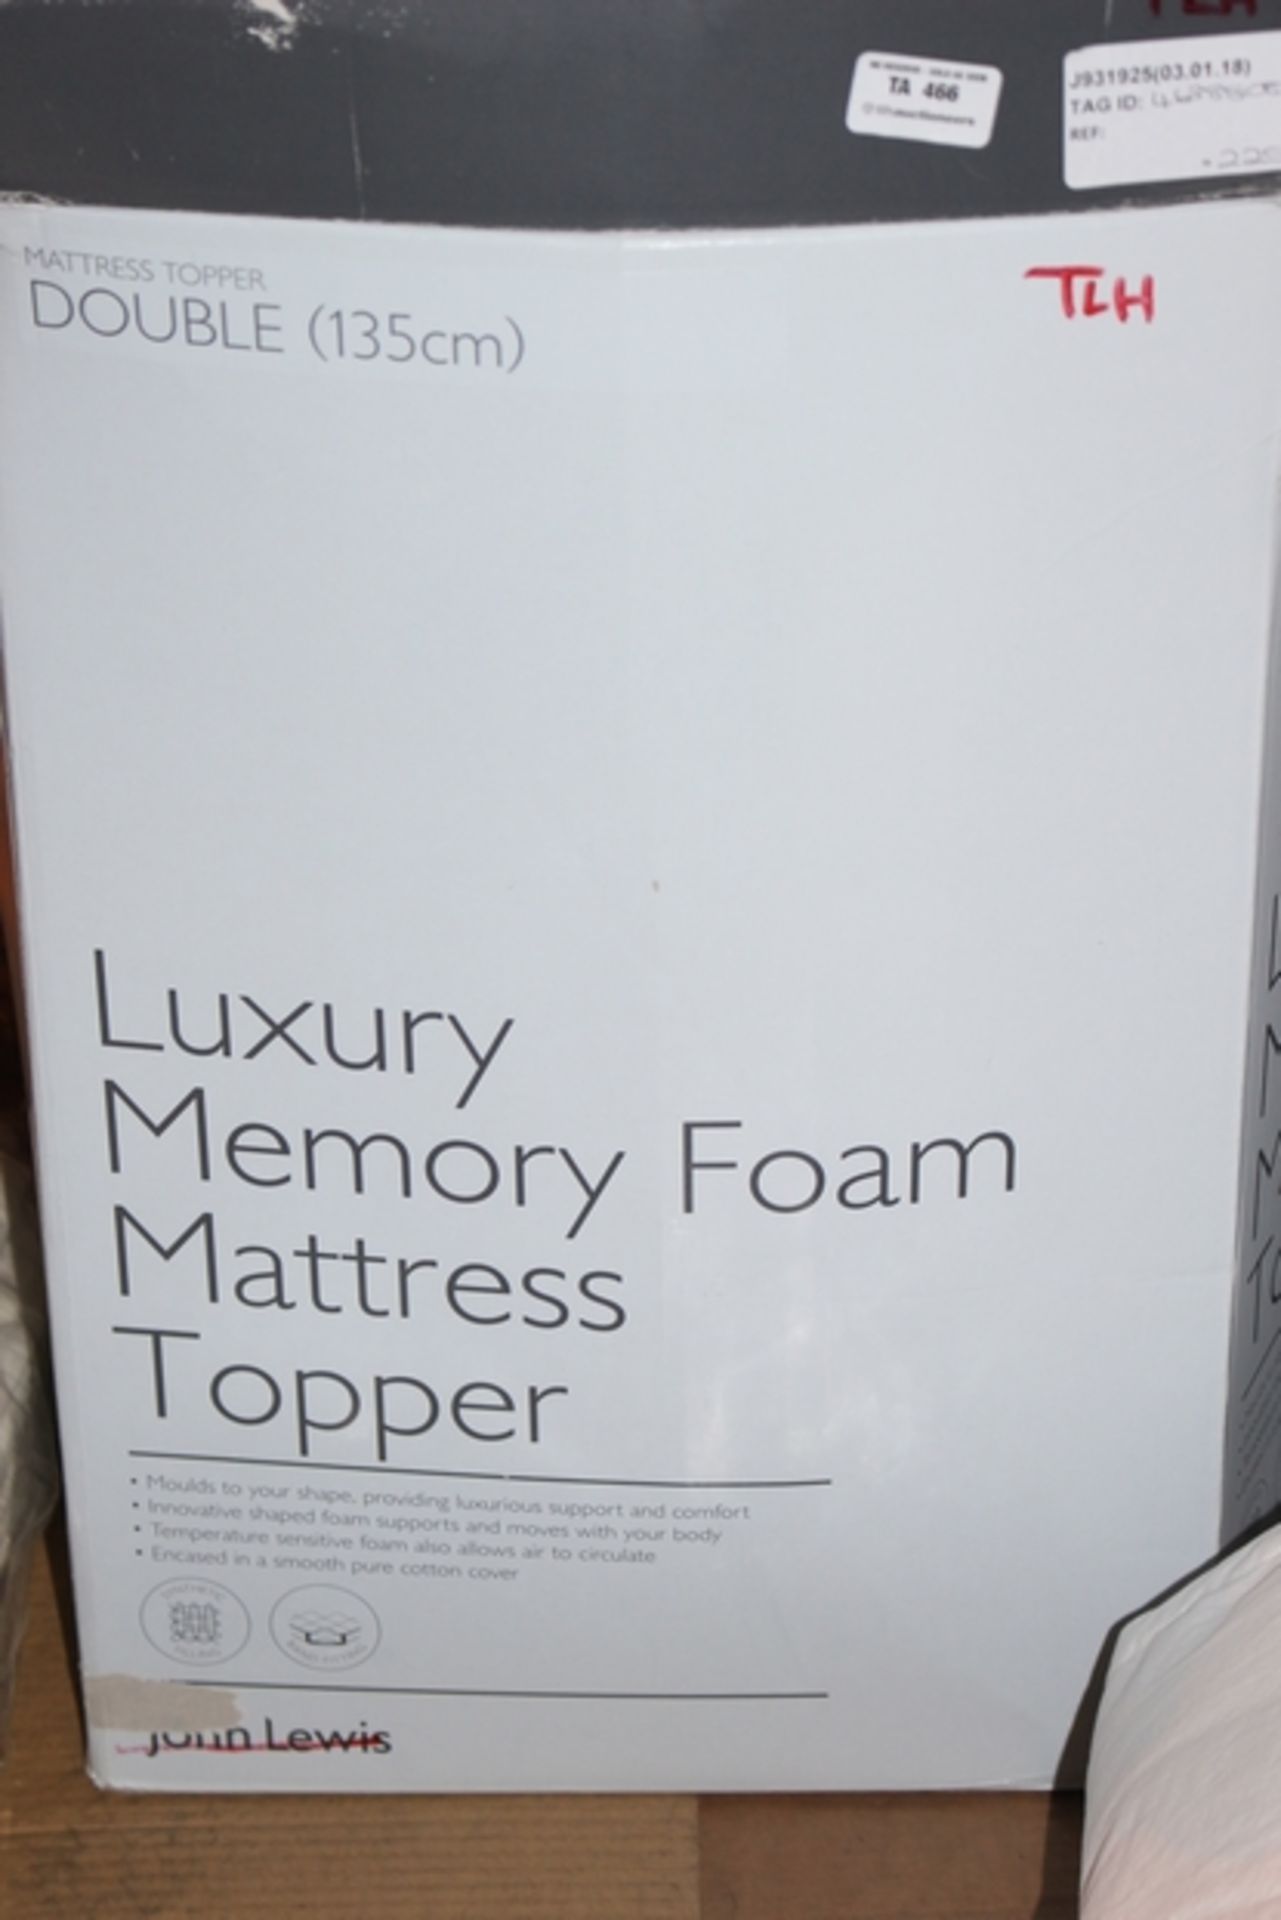 1X LUXURY MEMORY FOAM MATTRESS TOPPER RRP £220 (JL-931925) (03/01/18) (4638808)